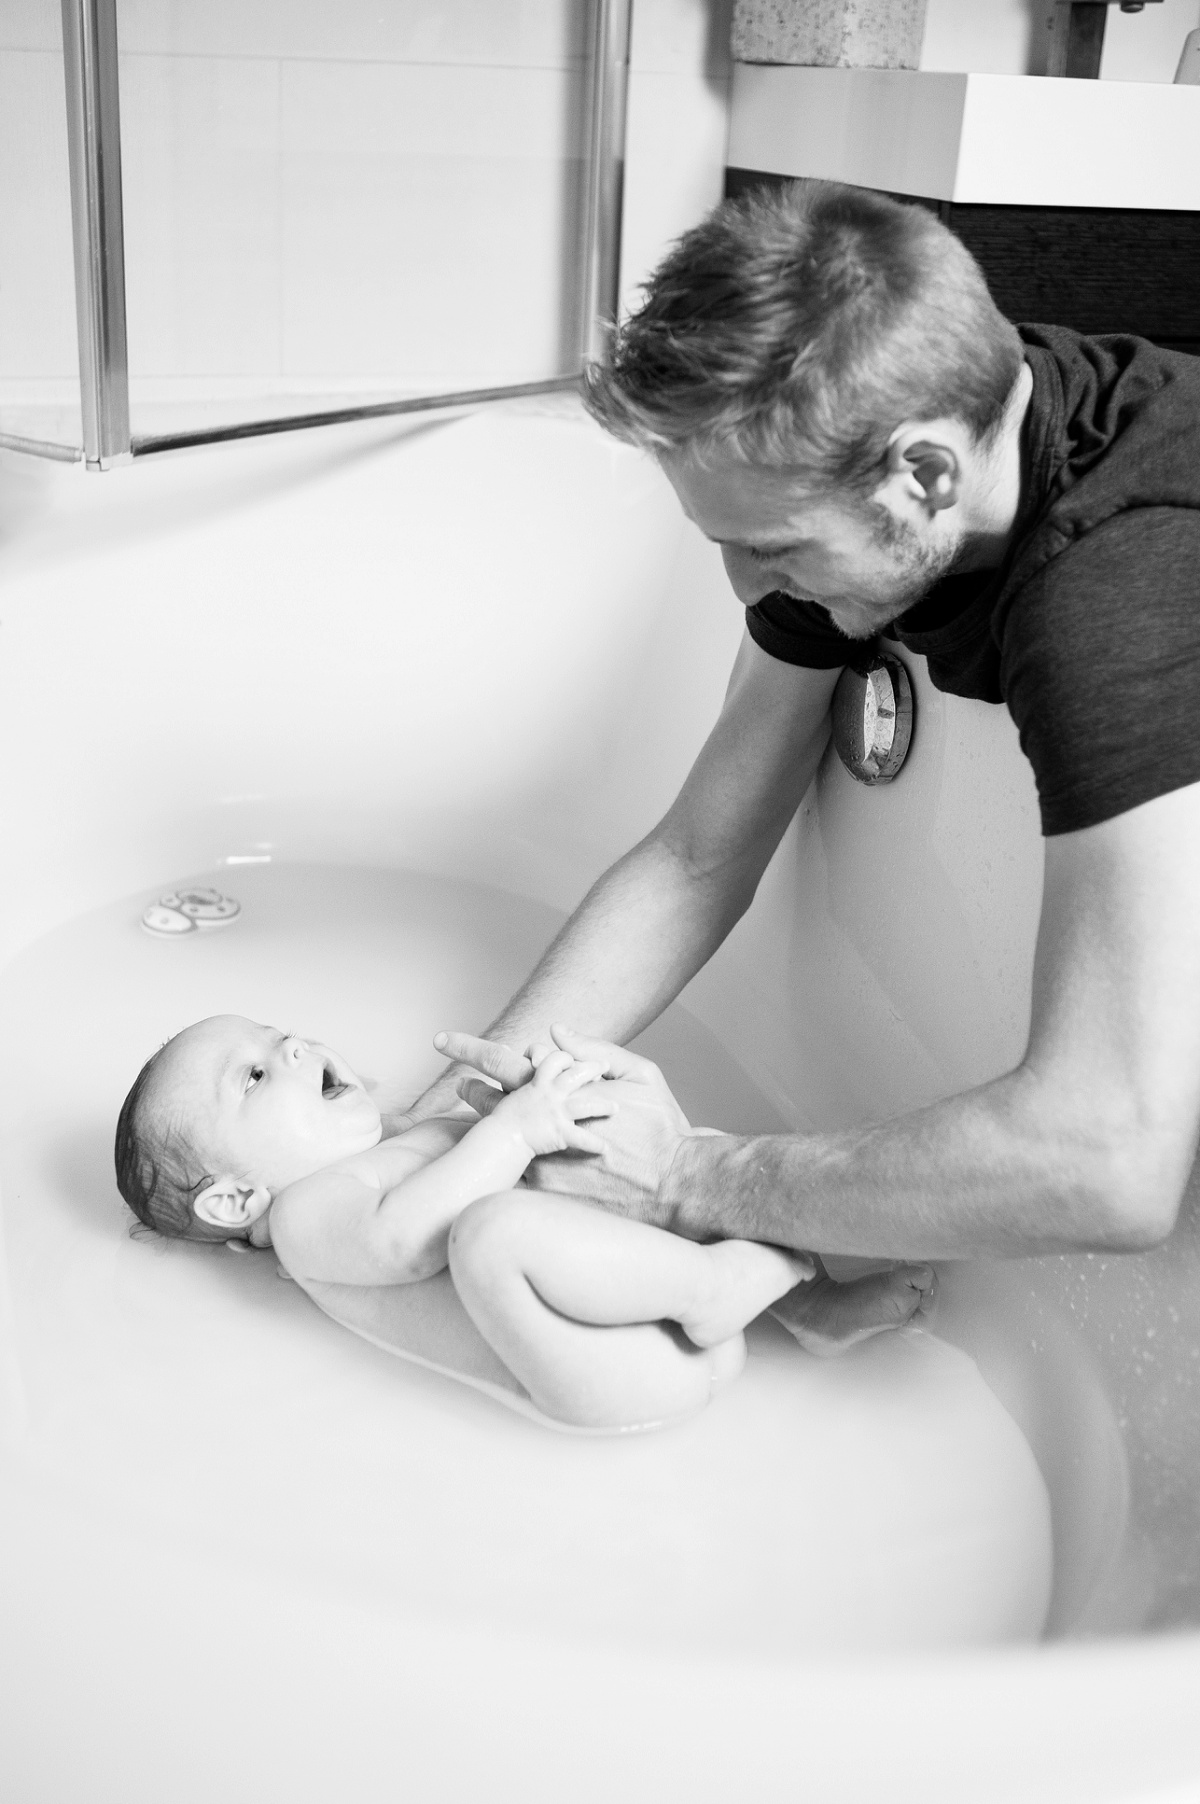 papa donne le bain de son fils - Photos bébé lifestyle - photographe famille lille